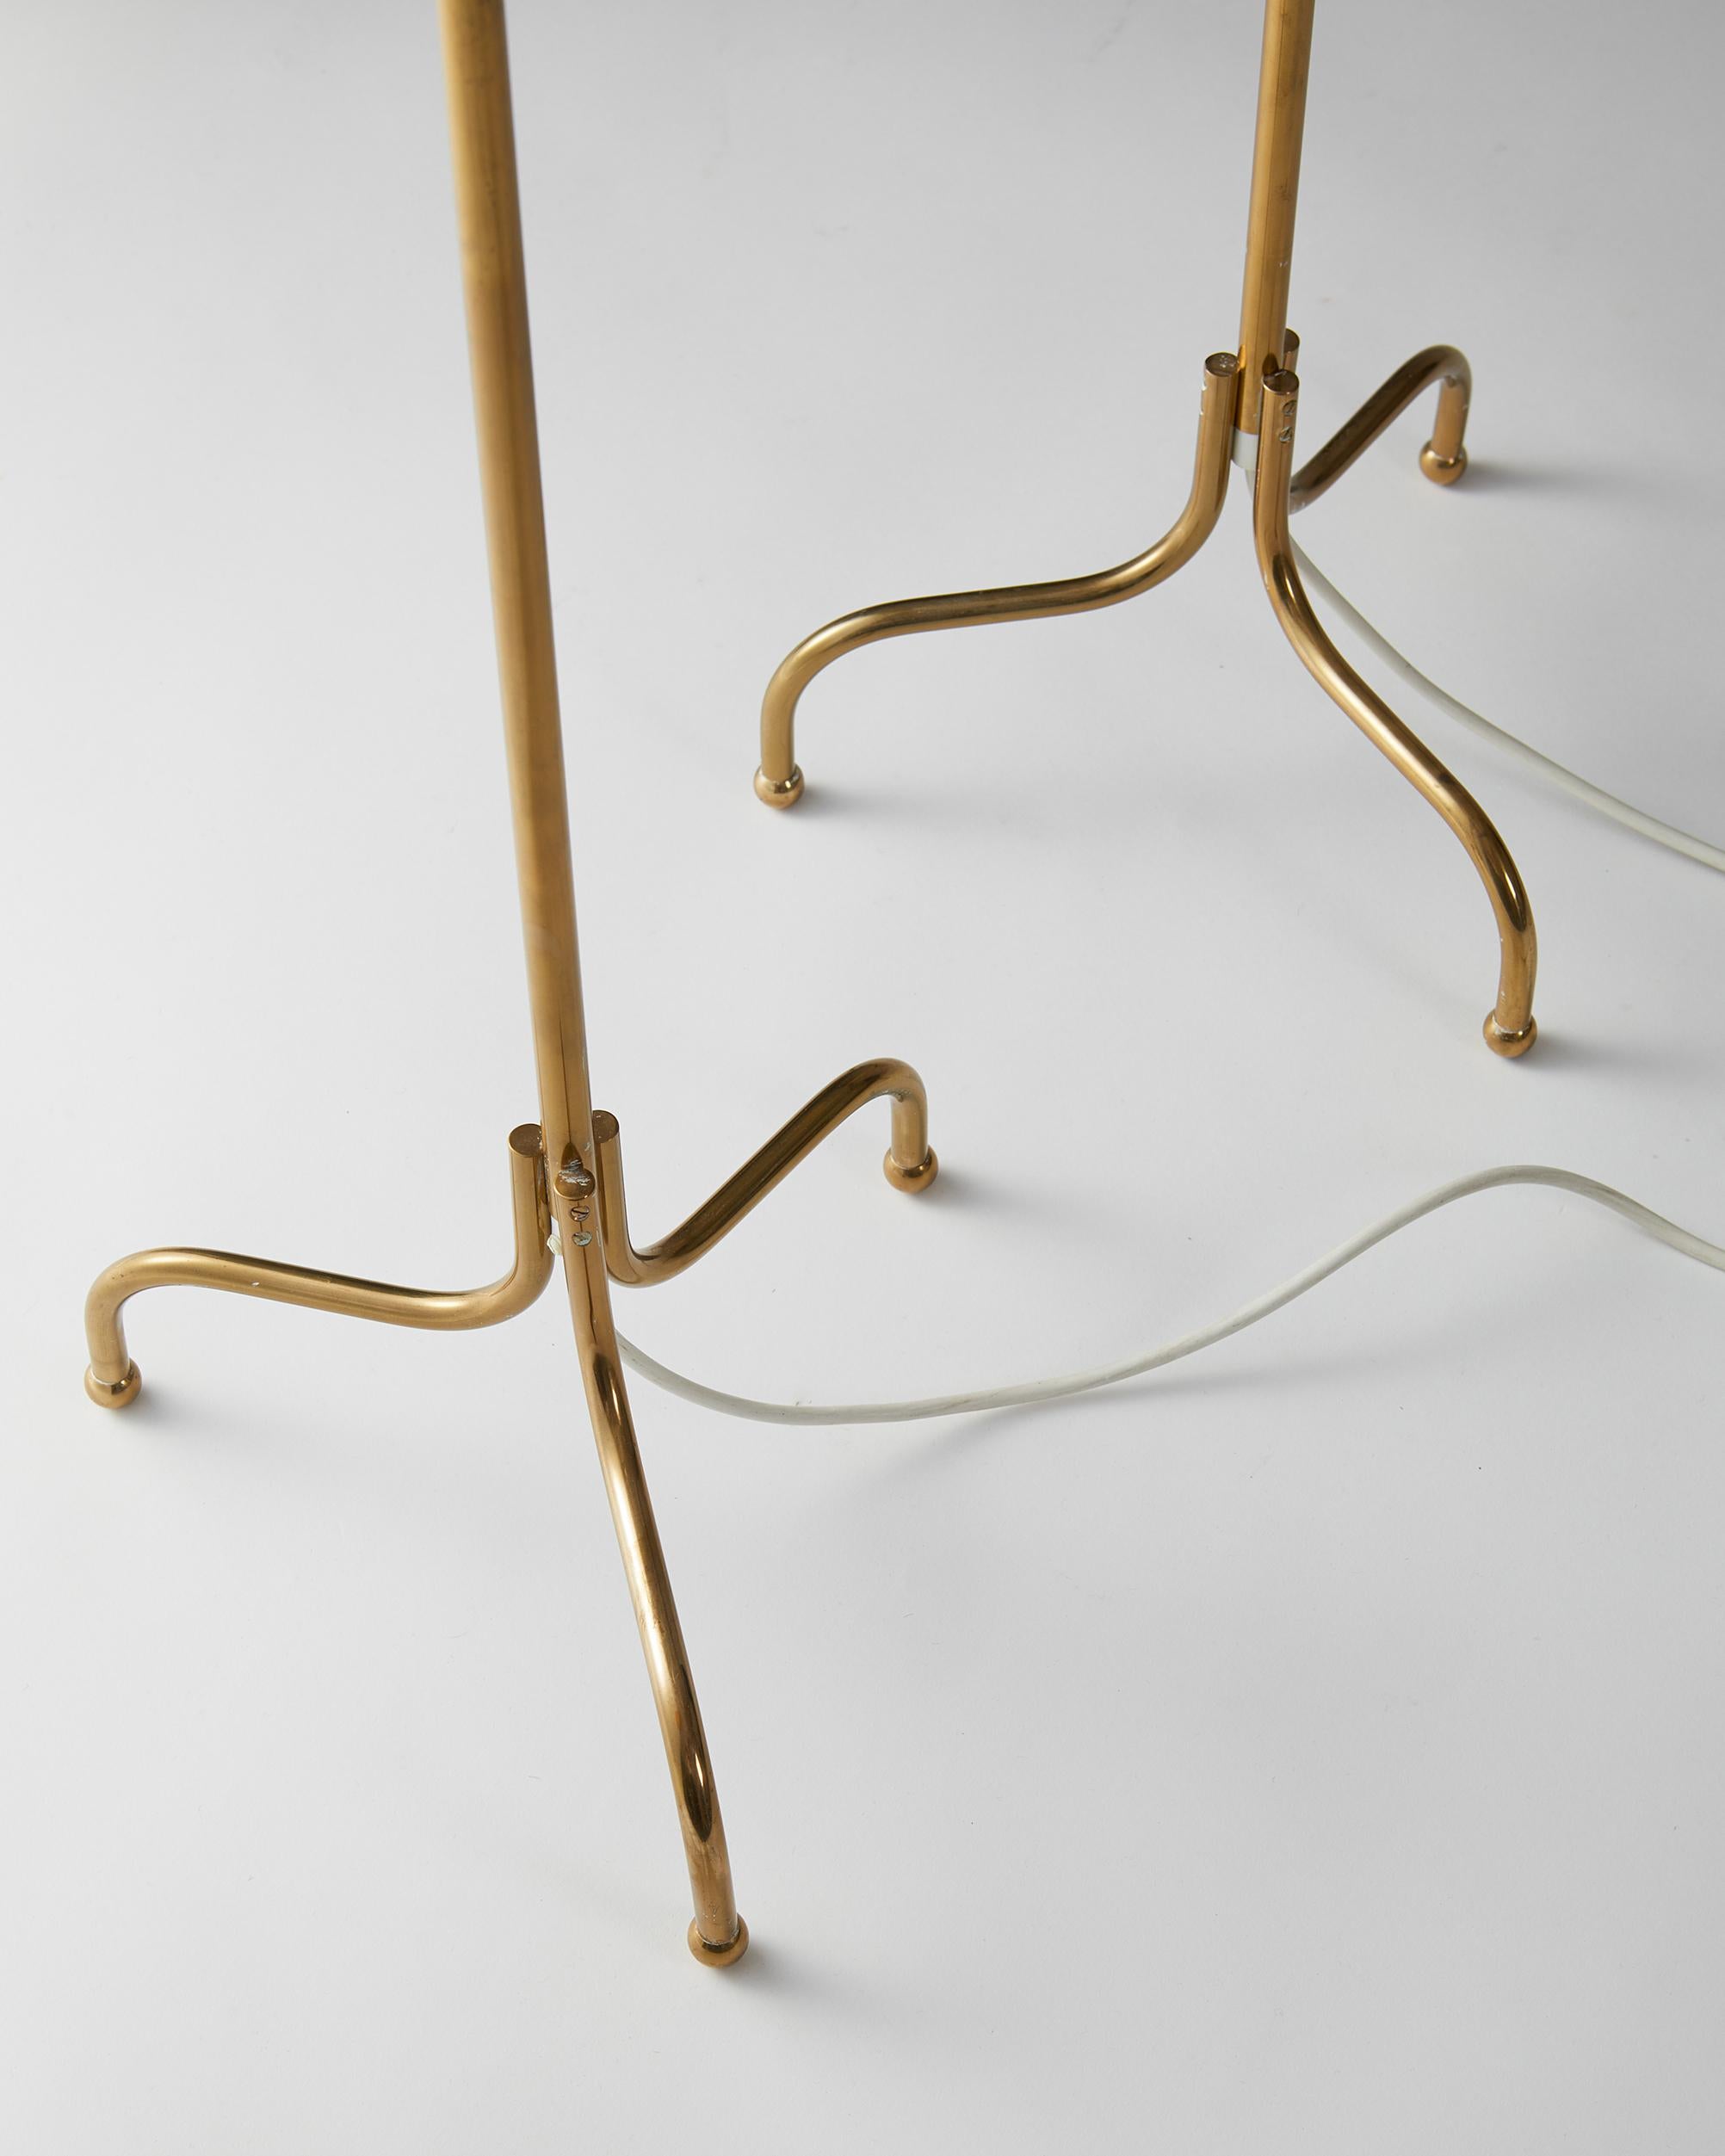 Swedish Pair of Floor Lamps ‘Model 2424’ Designed by Josef Frank for Svenskt Tenn